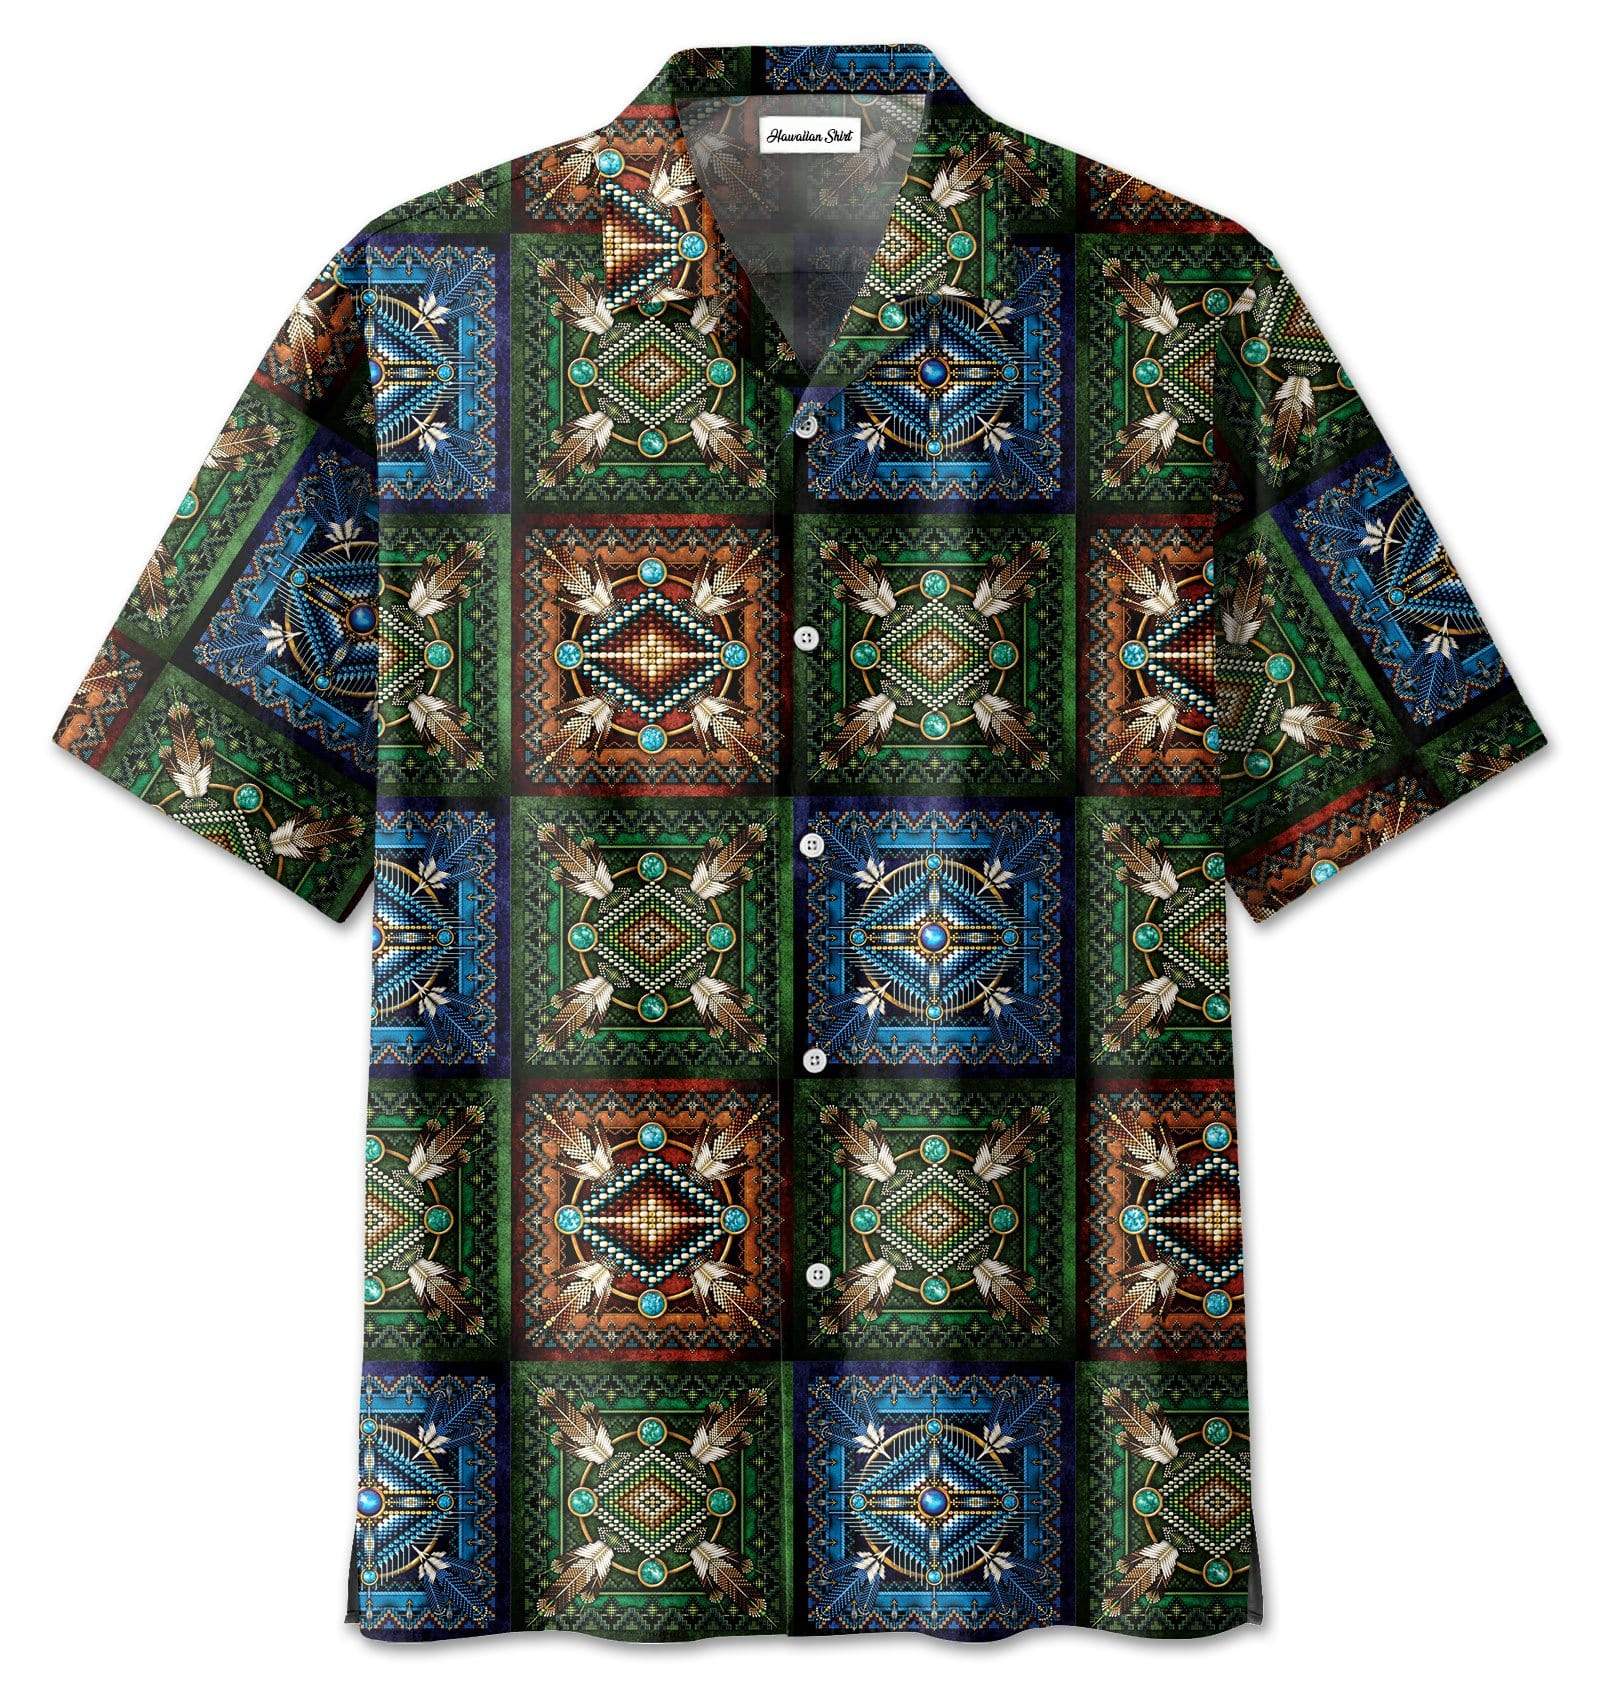 Native American Art Pattern Hawaiian Aloha Shirt For Men Women – Hothot